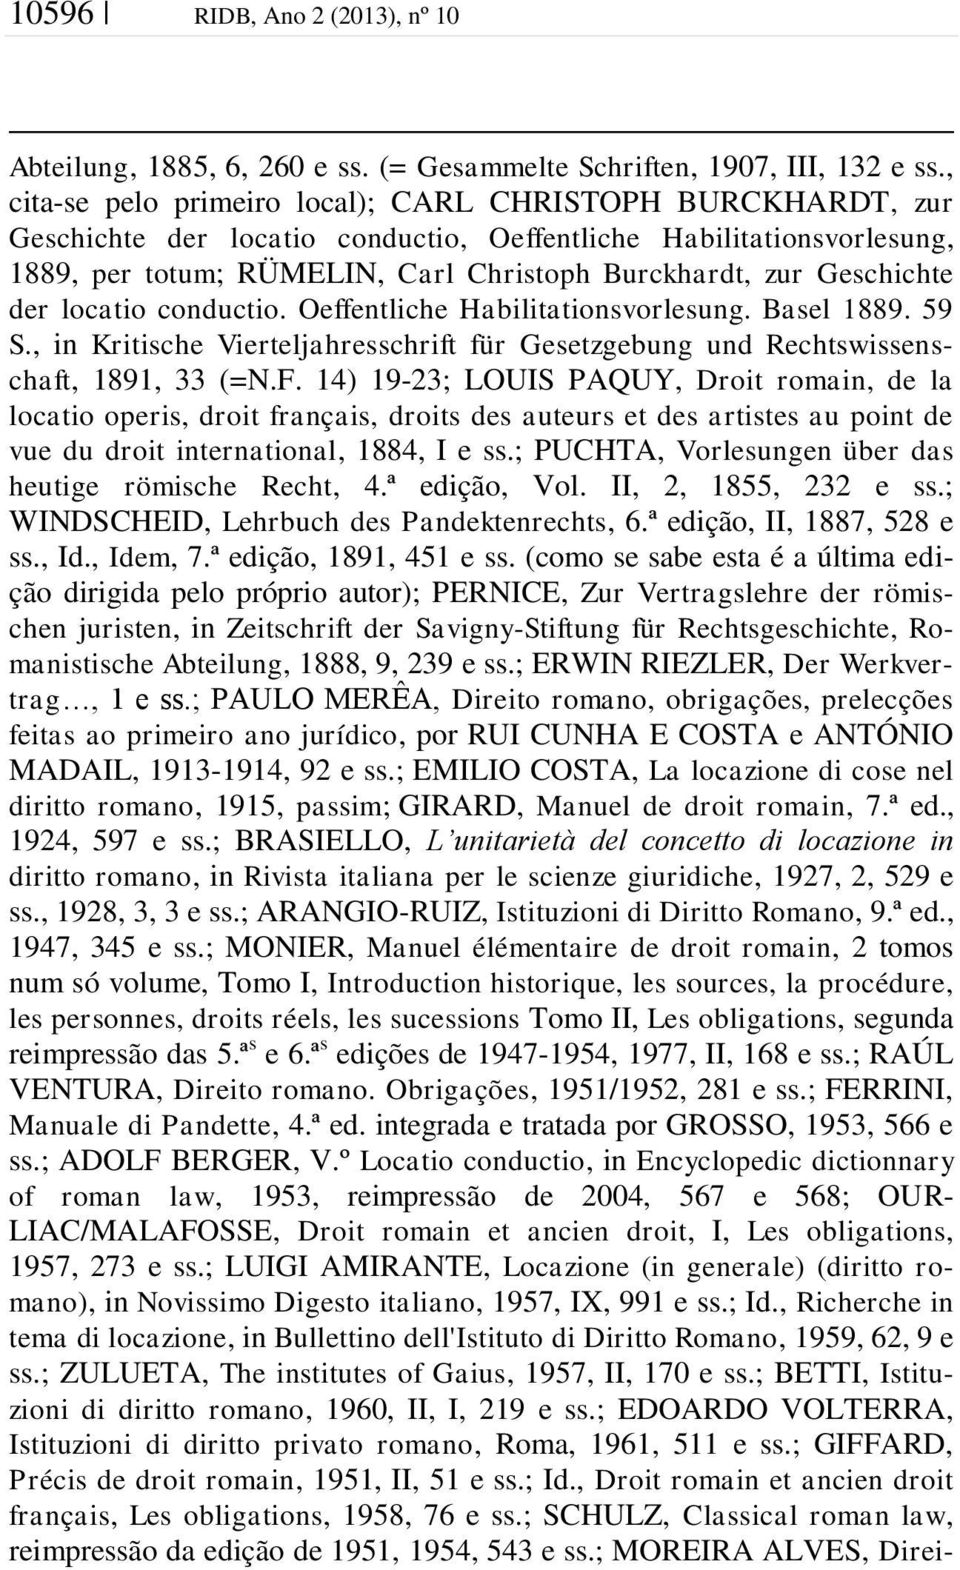 Geschichte der locatio conductio. Oeffentliche Habilitationsvorlesung. Basel 1889. 59 S., in Kritische Vierteljahresschrift für Gesetzgebung und Rechtswissenschaft, 1891, 33 (=N.F.